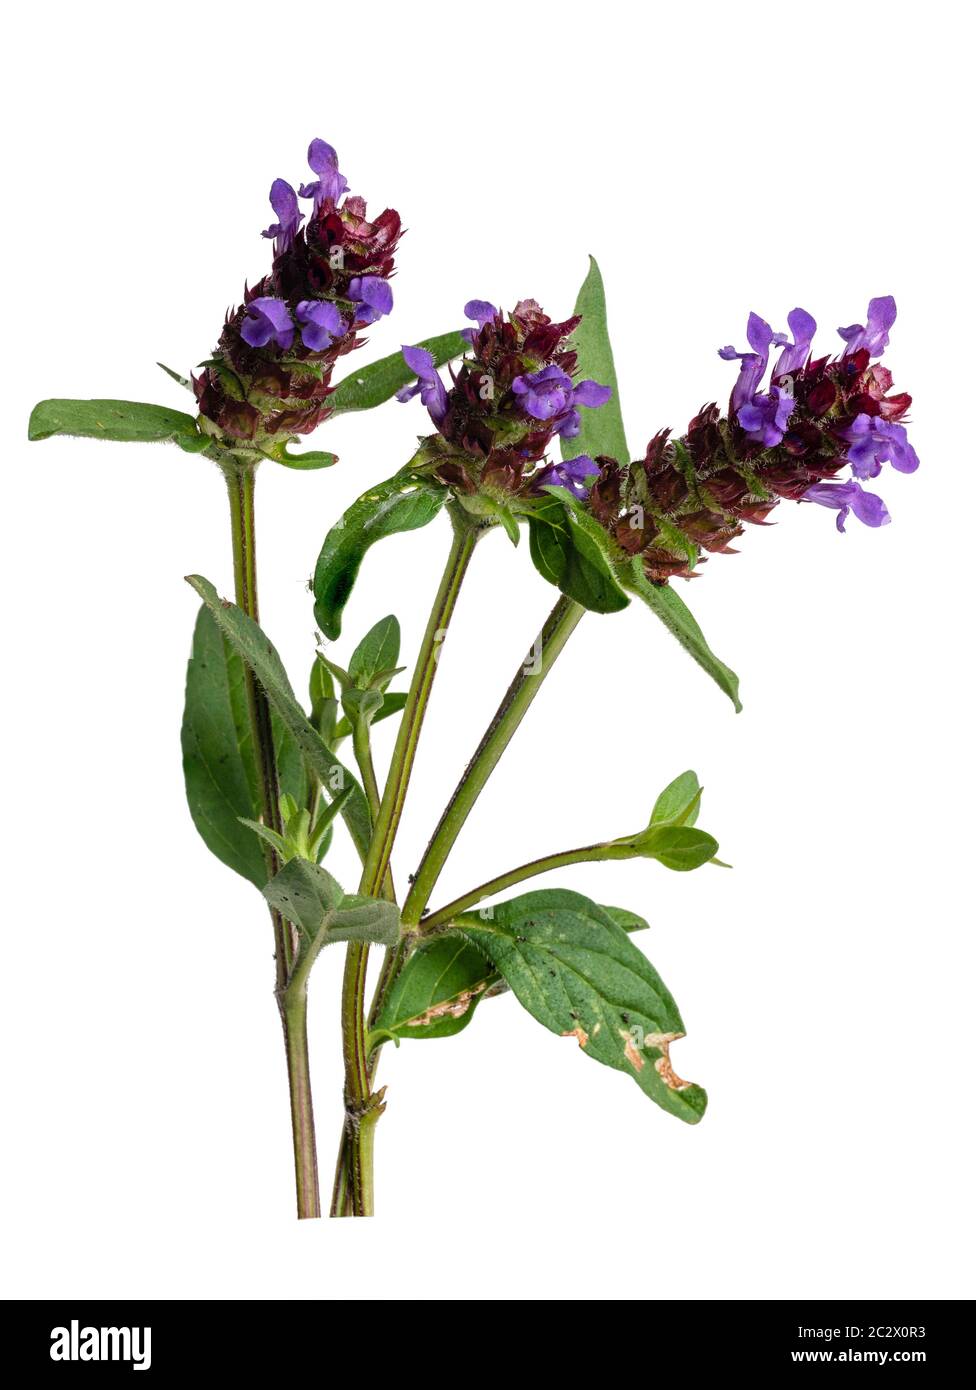 Violett-blaue Blüten der sommerblühenden UK Wildblume, Prunella vulgaris, self heal, auf weißem Hintergrund Stockfoto